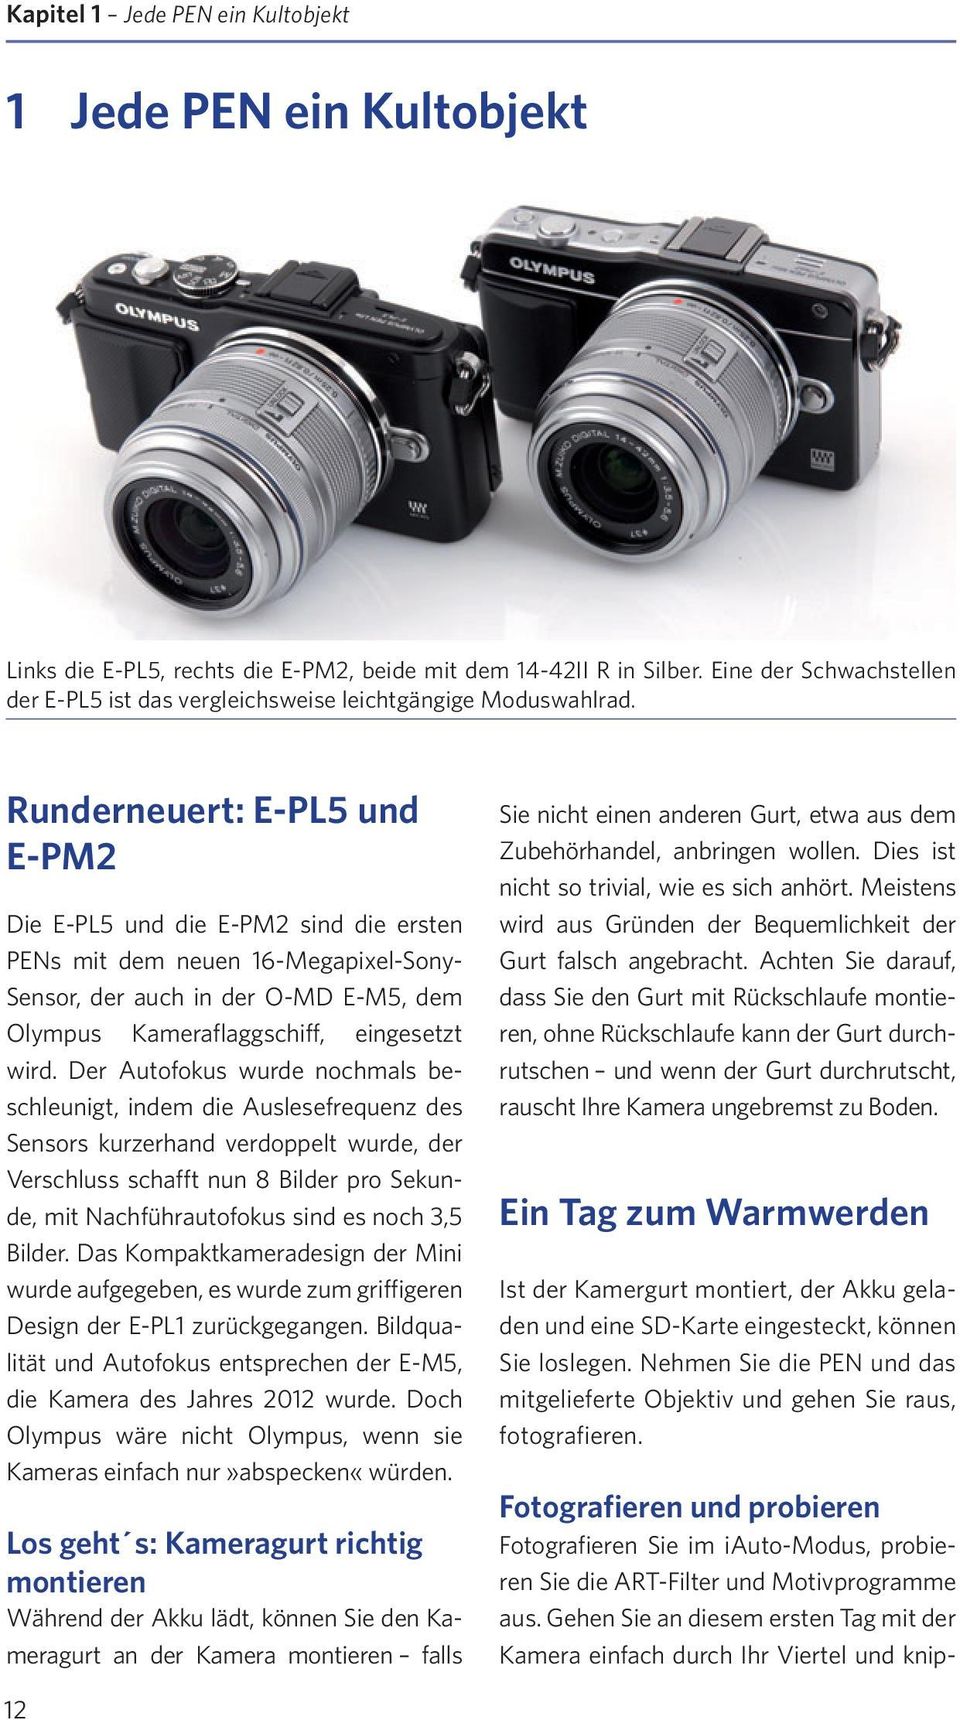 Runderneuert: E-PL5 und E-PM2 Die E-PL5 und die E-PM2 sind die ersten PENs mit dem neuen 16-Megapixel-Sony- Sensor, der auch in der O-MD E-M5, dem Olympus Kameraflaggschiff, eingesetzt wird.